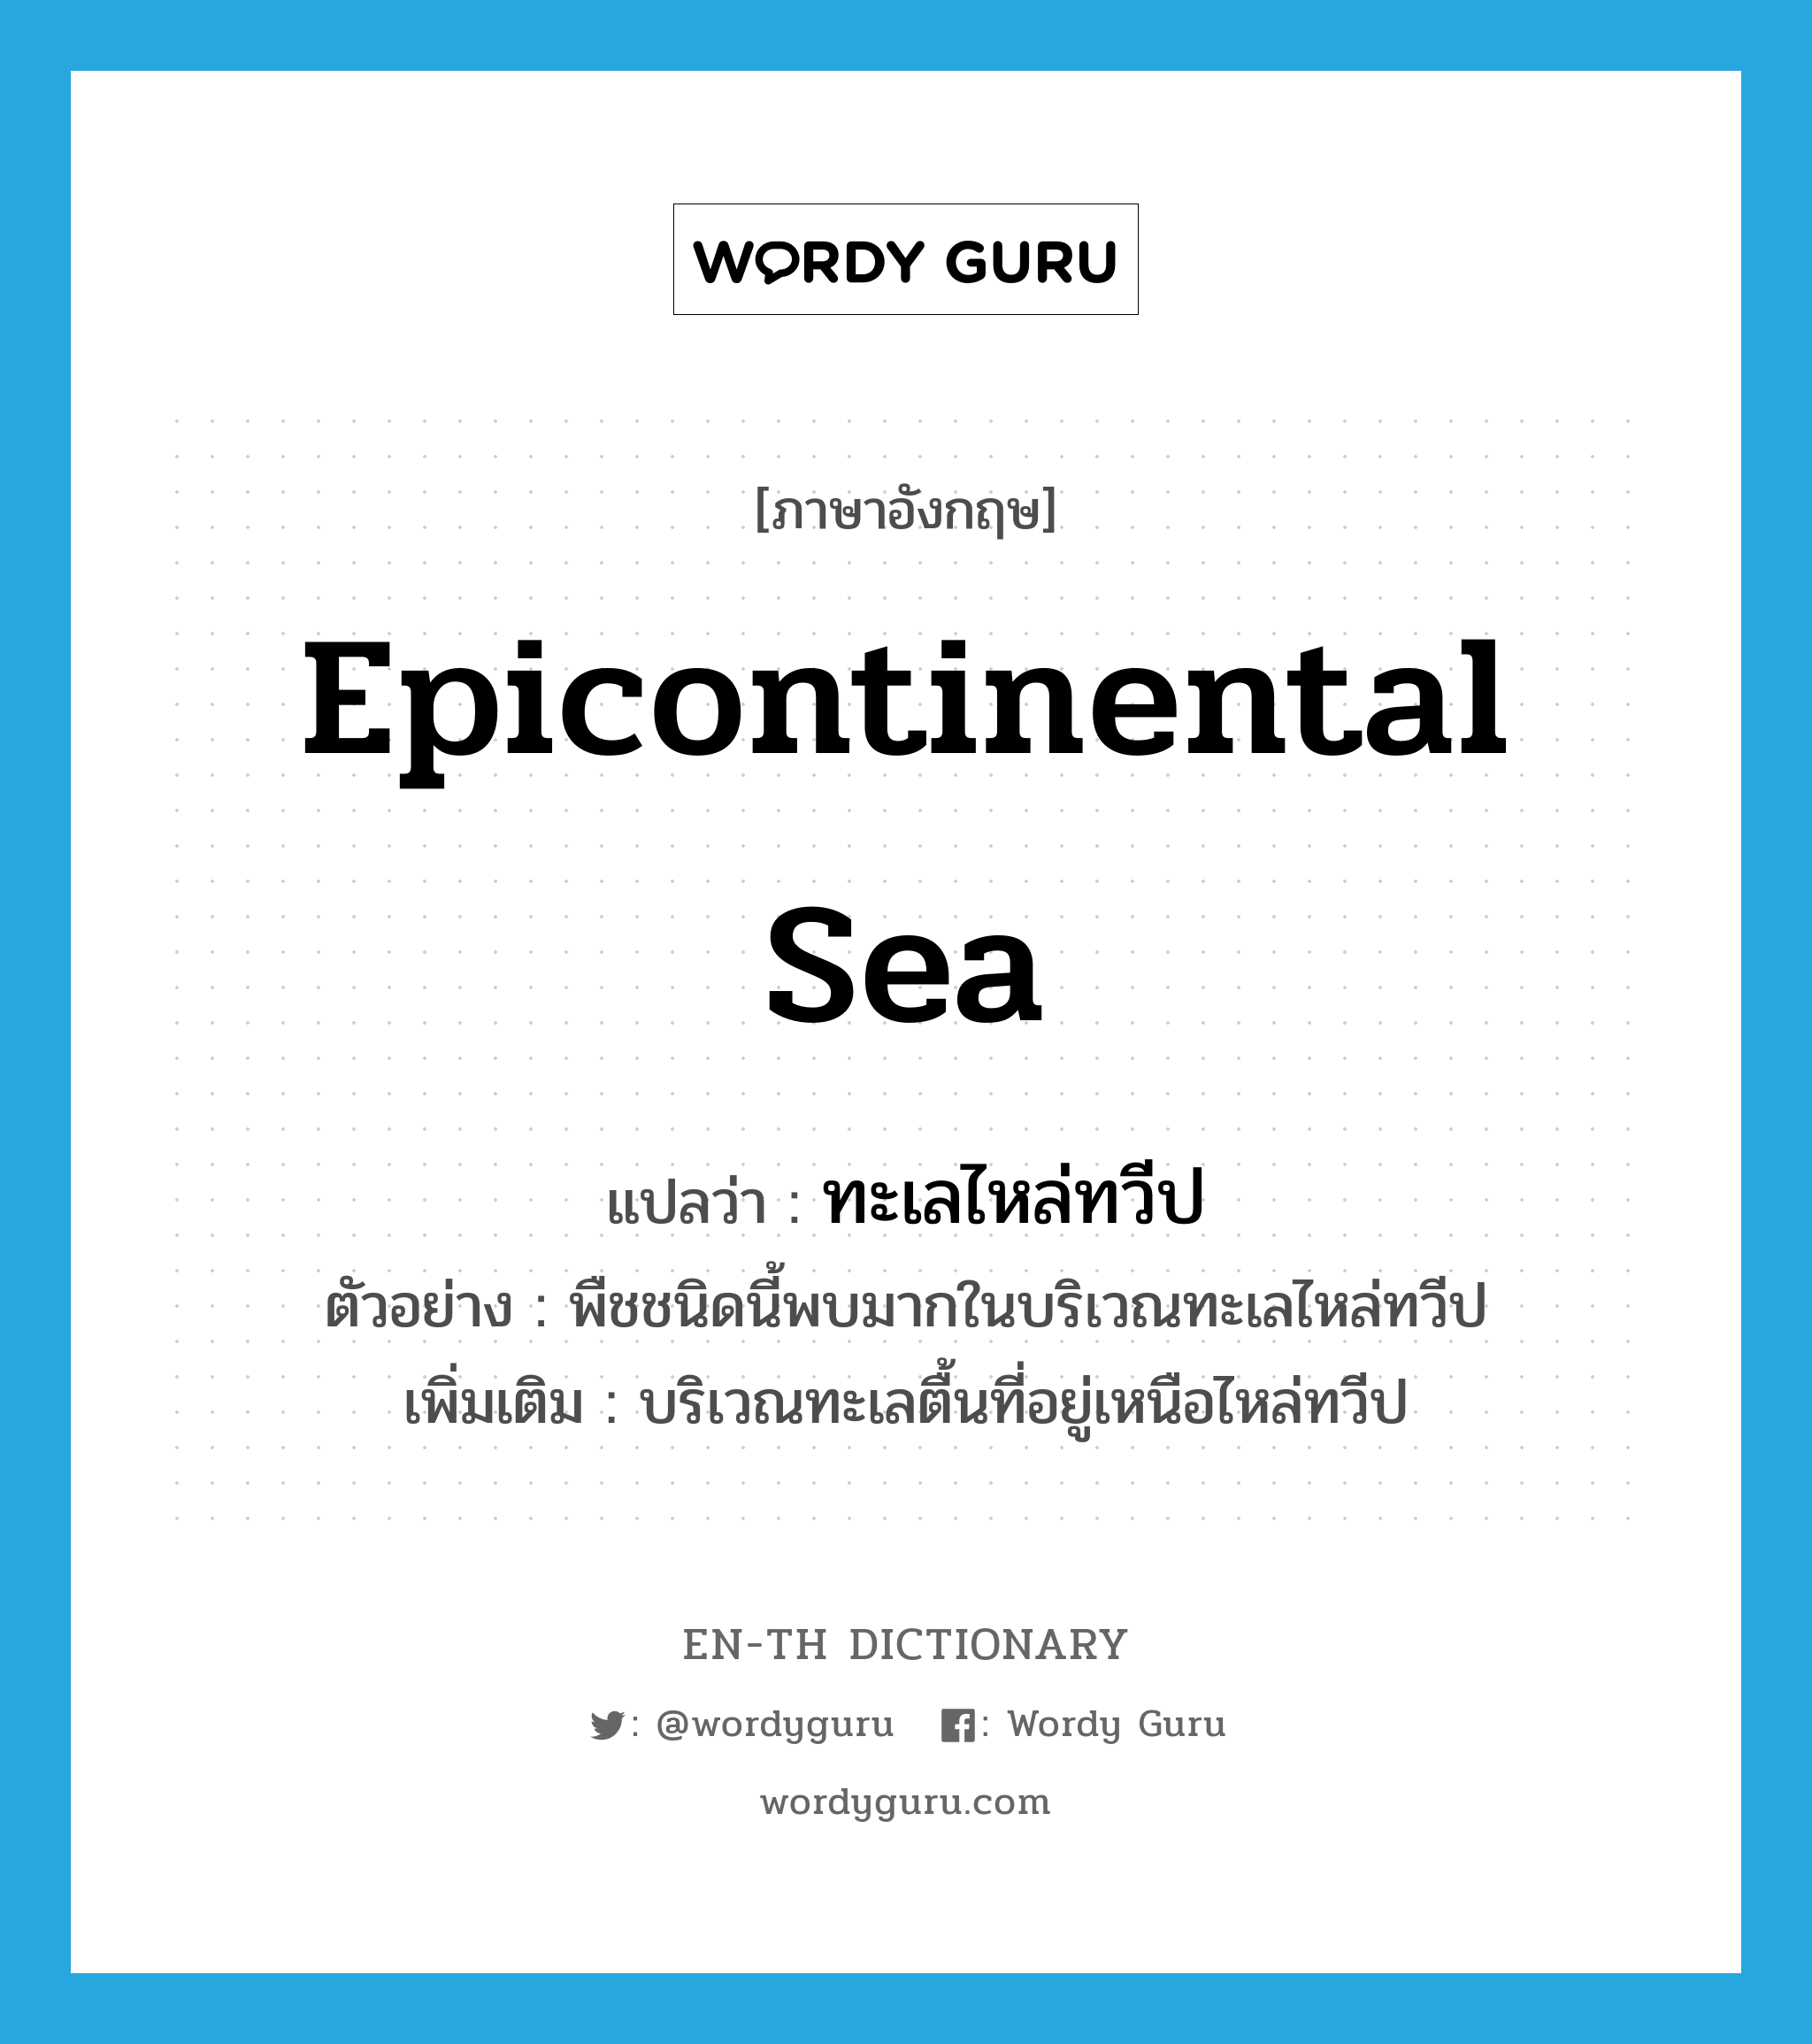 epicontinental sea แปลว่า?, คำศัพท์ภาษาอังกฤษ epicontinental sea แปลว่า ทะเลไหล่ทวีป ประเภท N ตัวอย่าง พืชชนิดนี้พบมากในบริเวณทะเลไหล่ทวีป เพิ่มเติม บริเวณทะเลตื้นที่อยู่เหนือไหล่ทวีป หมวด N